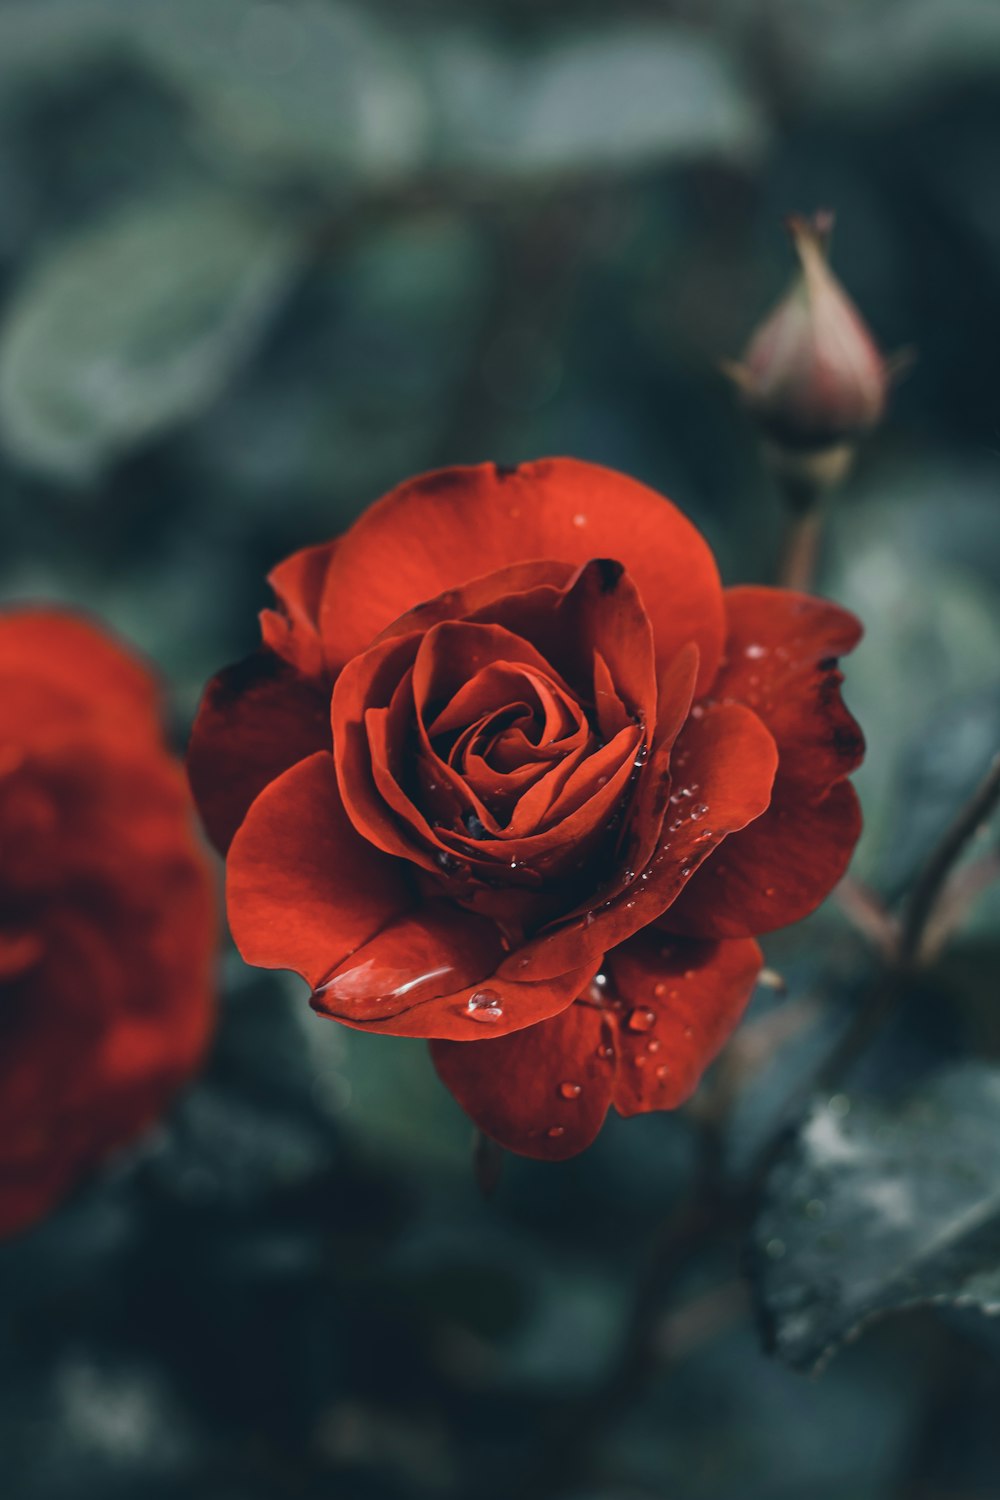 rosa roja en flor en fotografía de primer plano